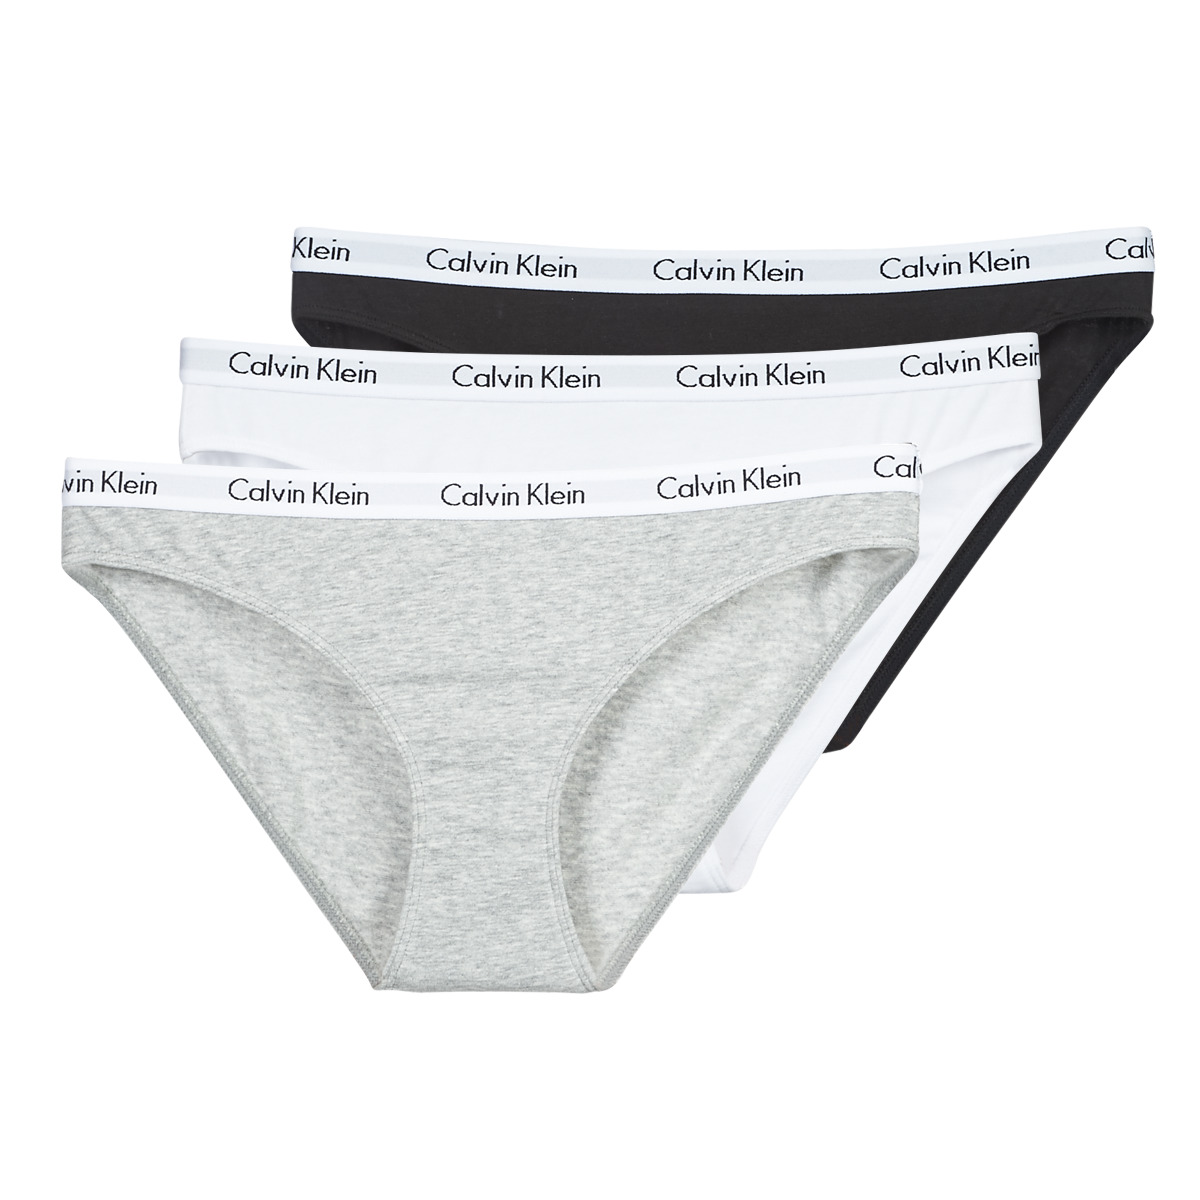 sukker tegnebog fortryde Calvin Klein Jeans CAROUSEL BIKINI X 3 Sort / Hvid / Grå / Marmoreret -  Gratis fragt | Spartoo.dk ! - Undertøj Trusser Dame 329,00 Kr